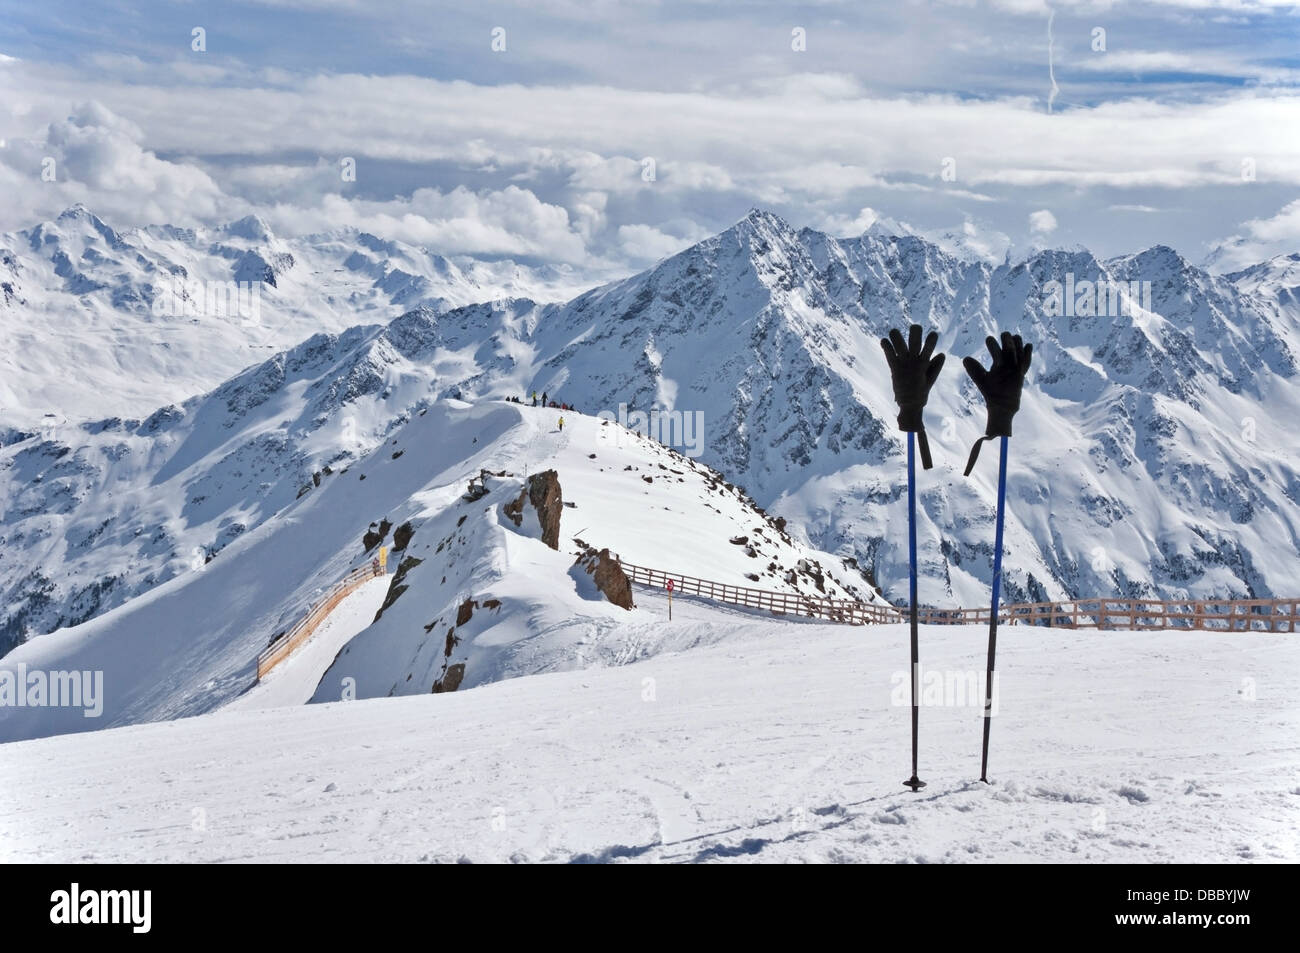 Skistöcke mit Handschuhen an der Spitze der Gaislachkogel in Sölden im  Ötztal Alpen in Tirol, Österreich Stockfotografie - Alamy